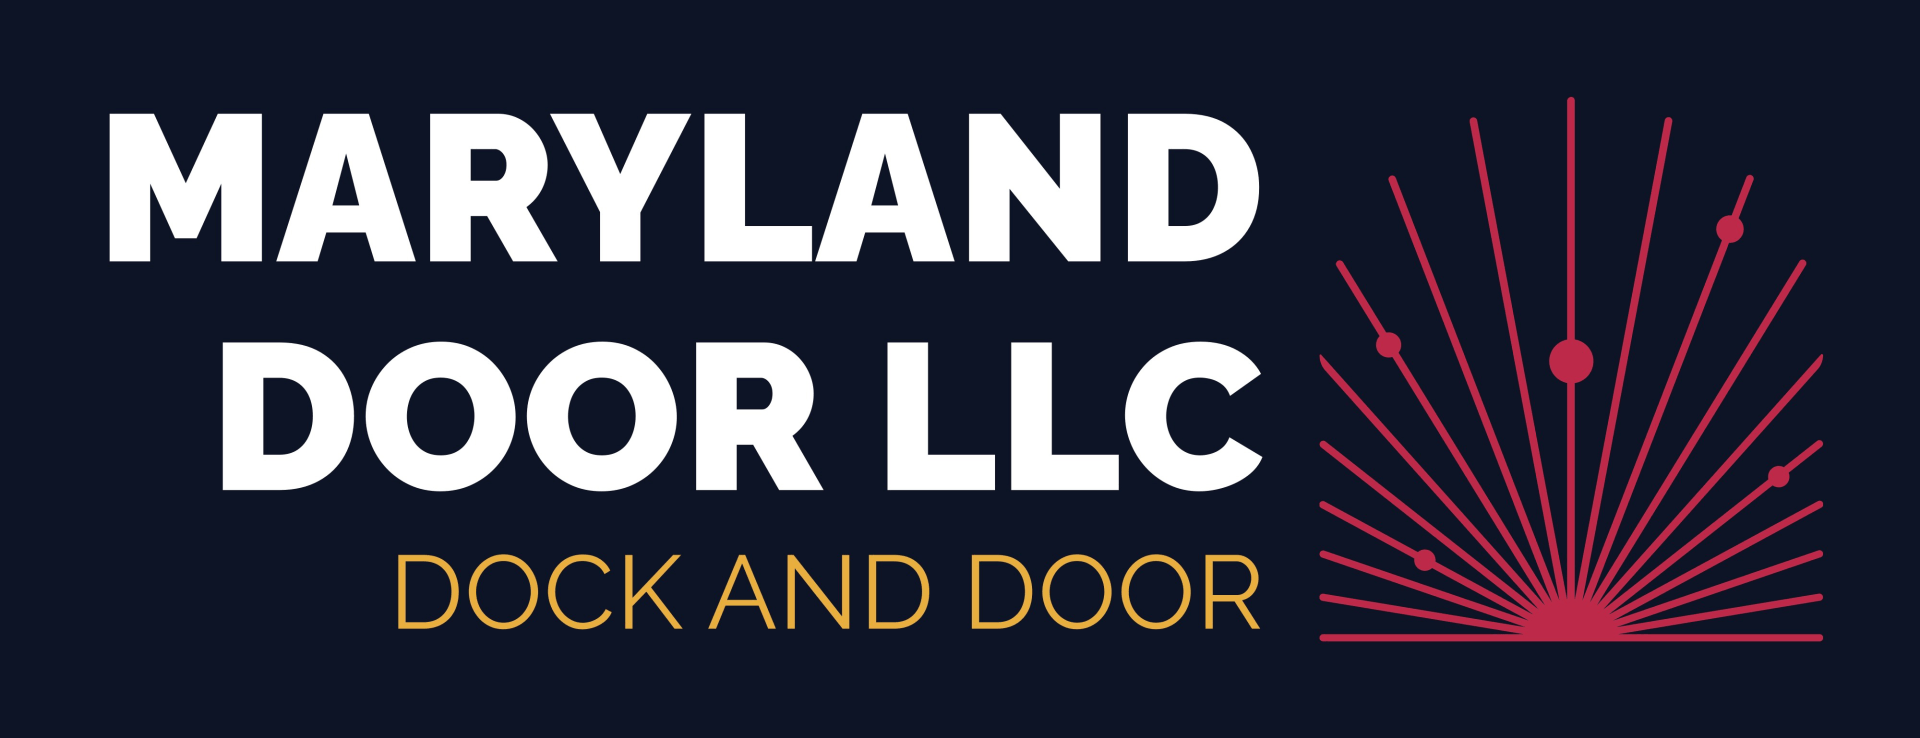 Maryland Door LLC